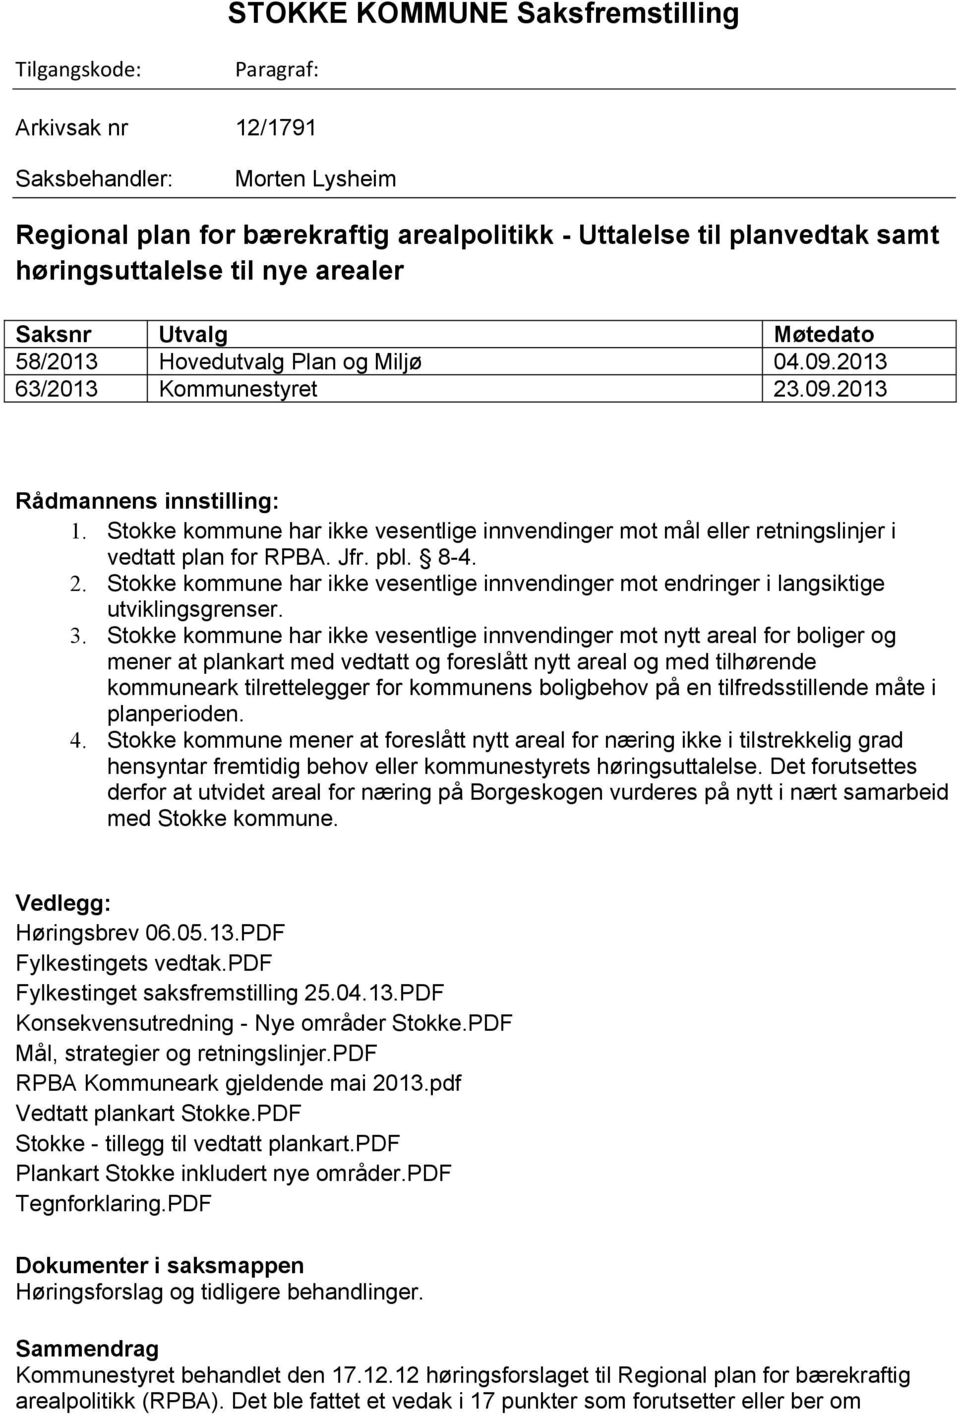 Stokke kommune har ikke vesentlige innvendinger mot mål eller retningslinjer i vedtatt plan for RPBA. Jfr. pbl. 8-4. 2.